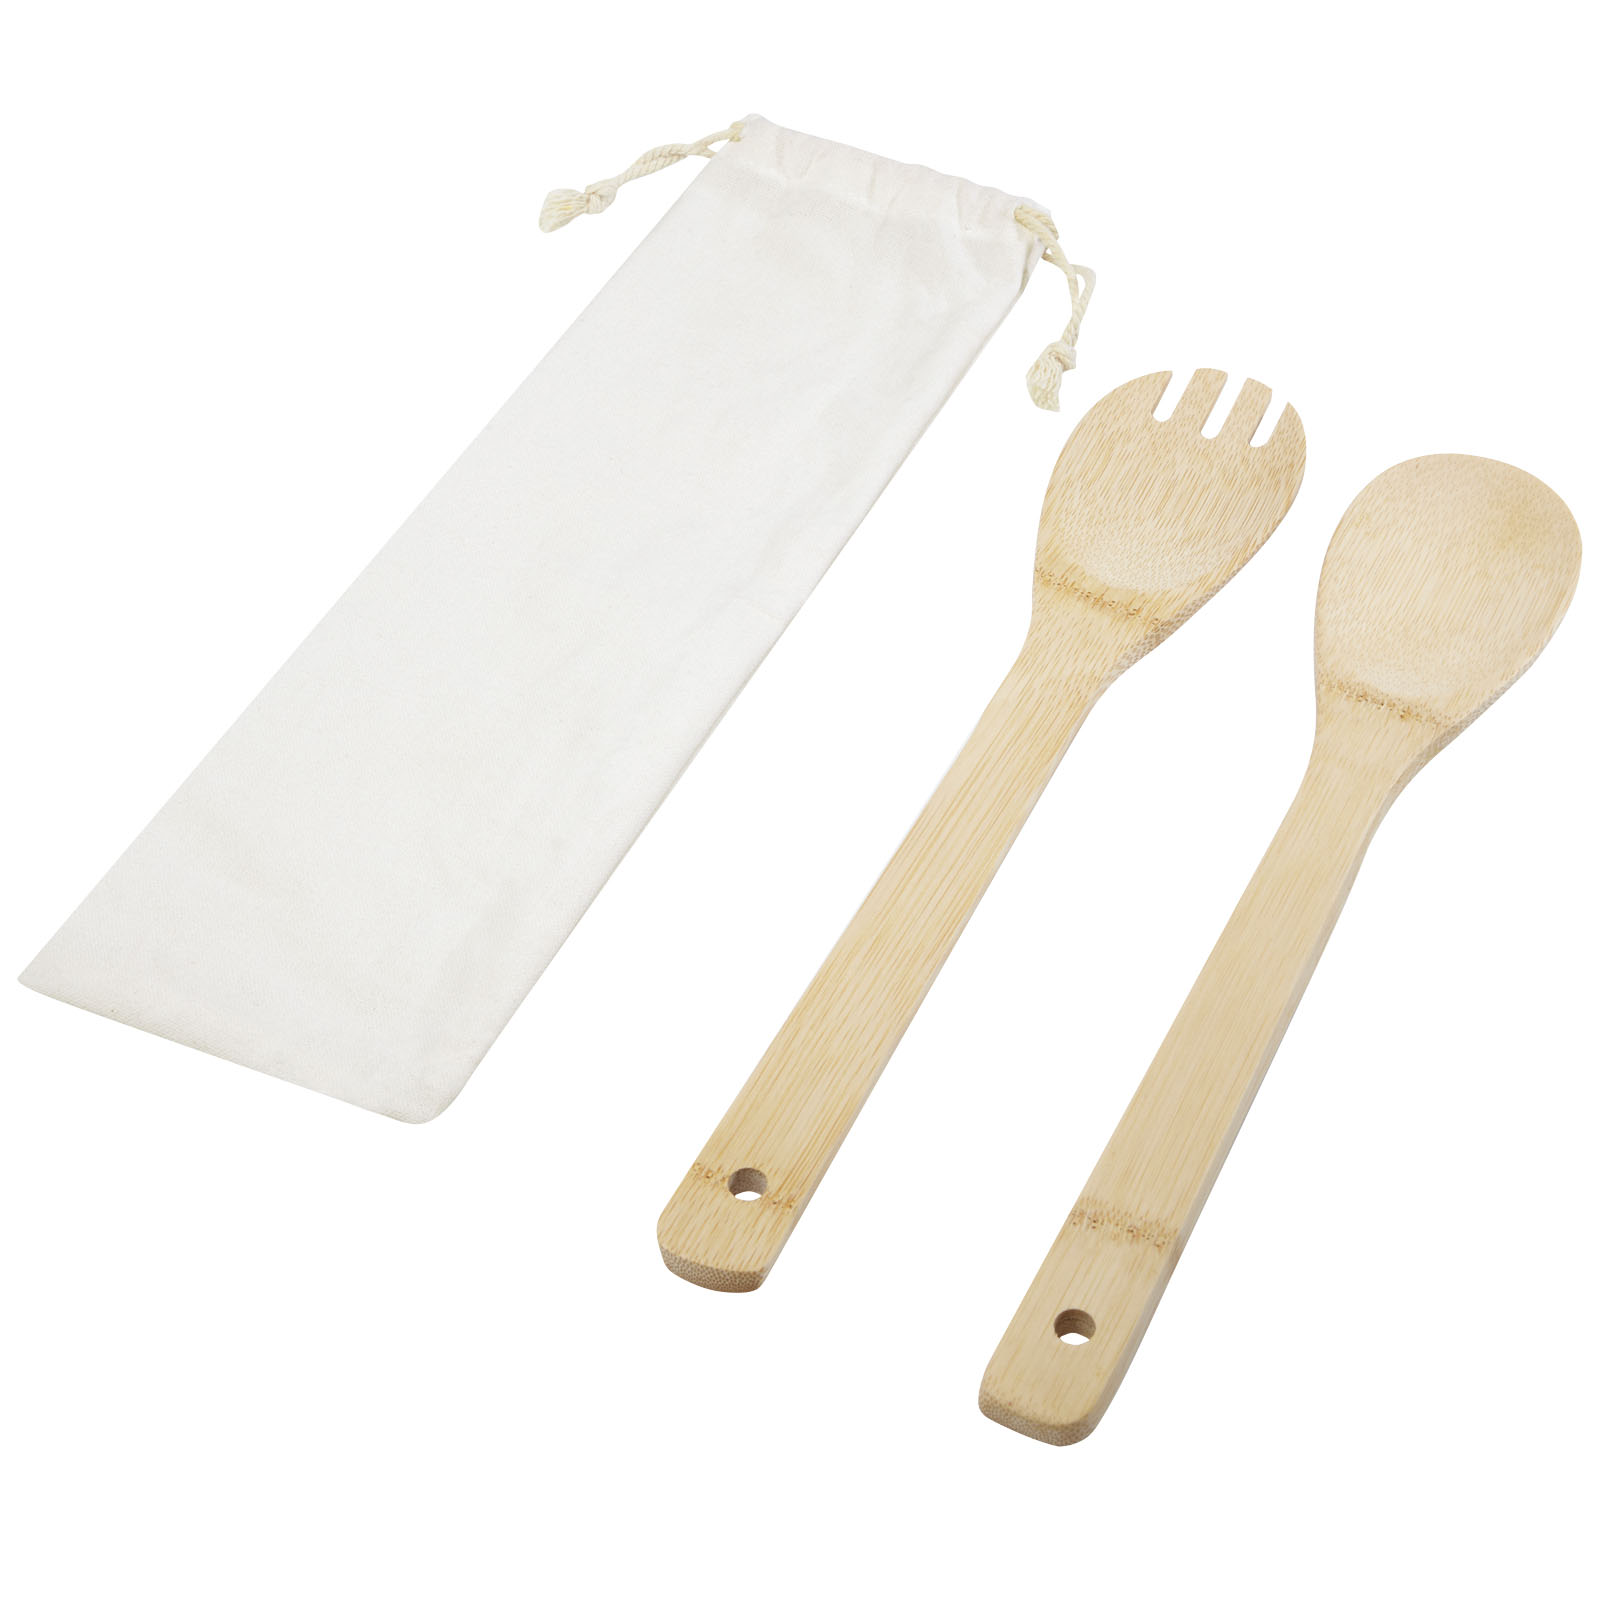 Bambus salatske og gaffel sæt - Ledøje-Smørum